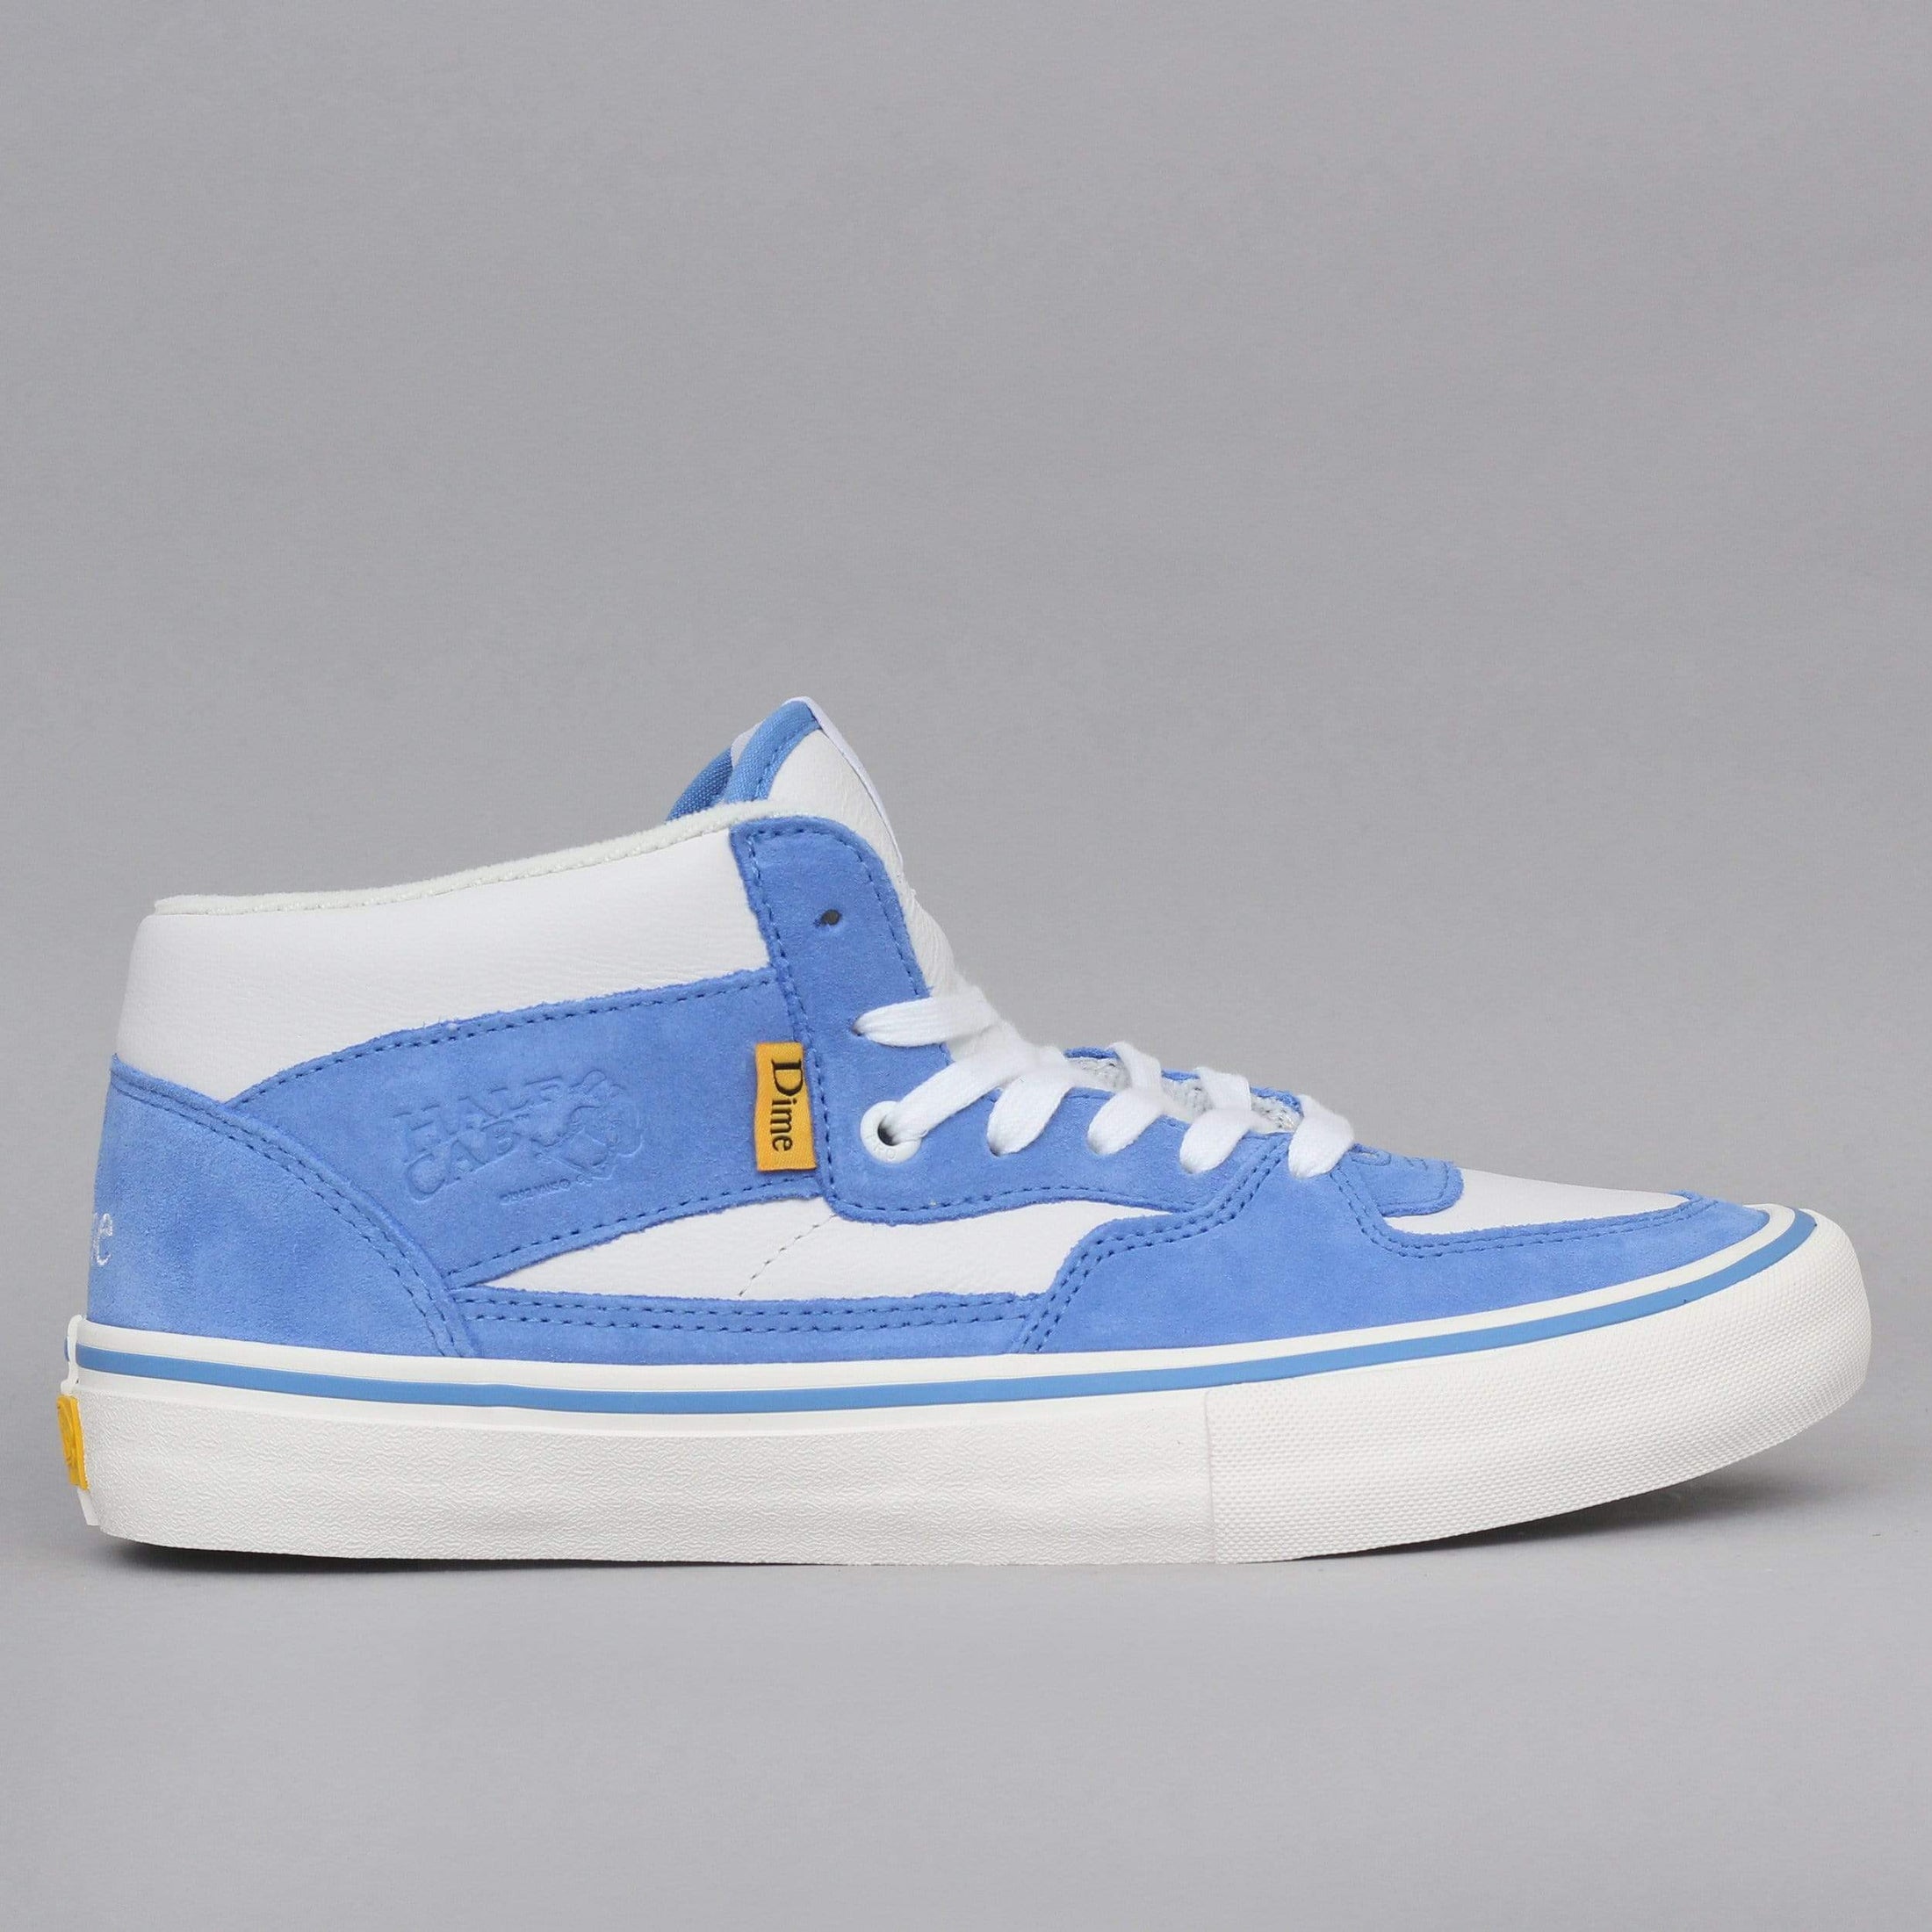 Vans Half Cab Pro Ltd Shoes (Dime) Blue / Marshmallow